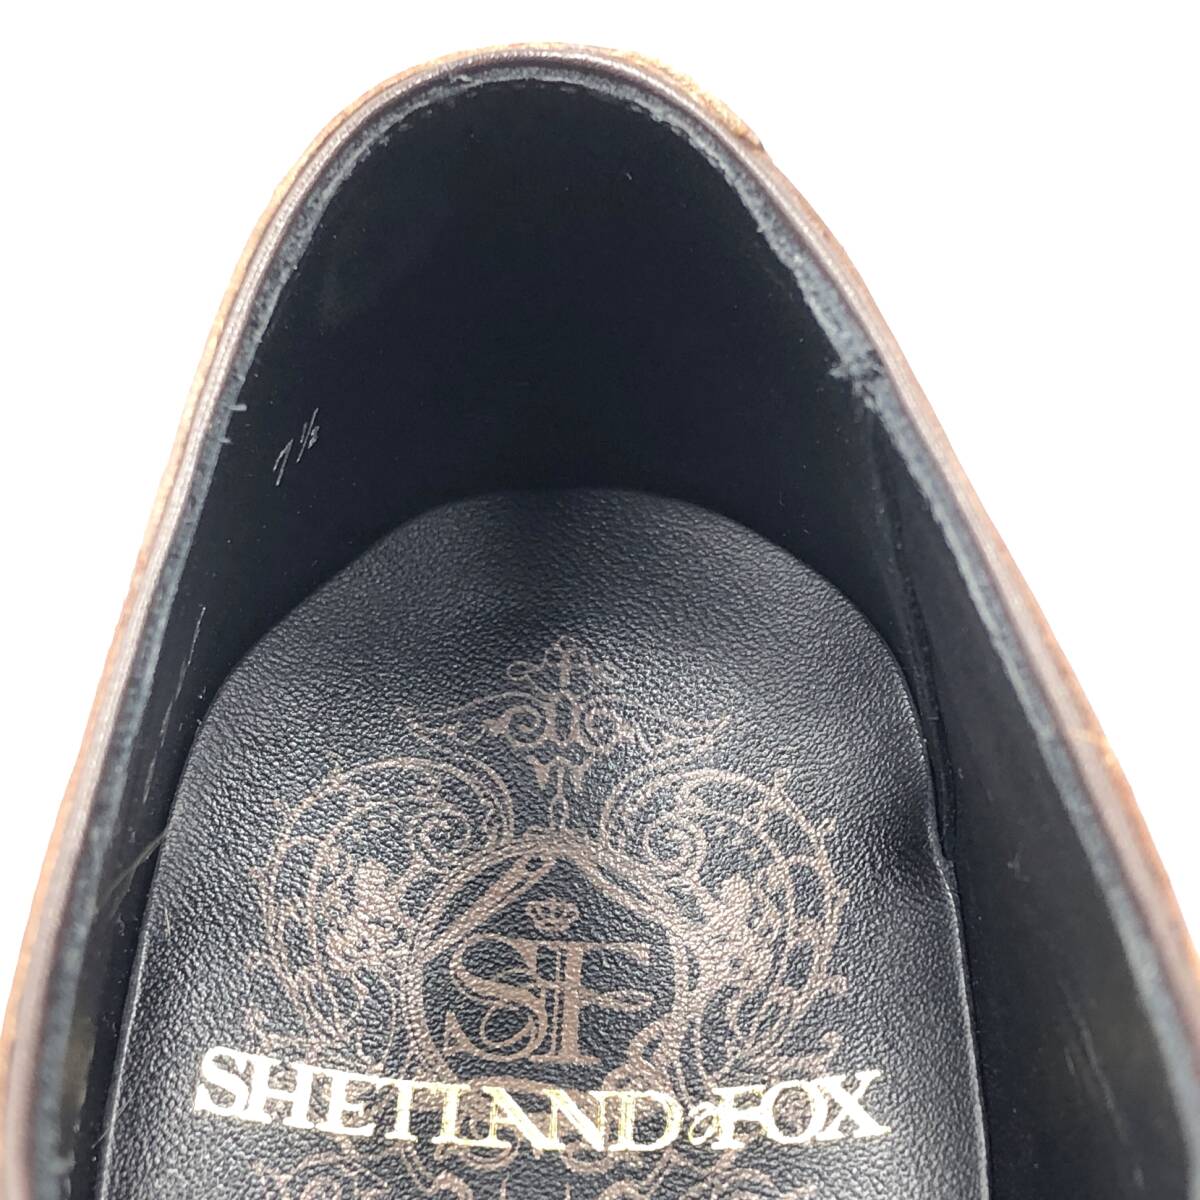 即決 SHETLANDFOX シェットランドフォックス 25.5cm 7.5 076F メンズ レザーシューズ プレーントゥ 外羽根 茶 ブラウン 革靴 皮靴 ビジネス